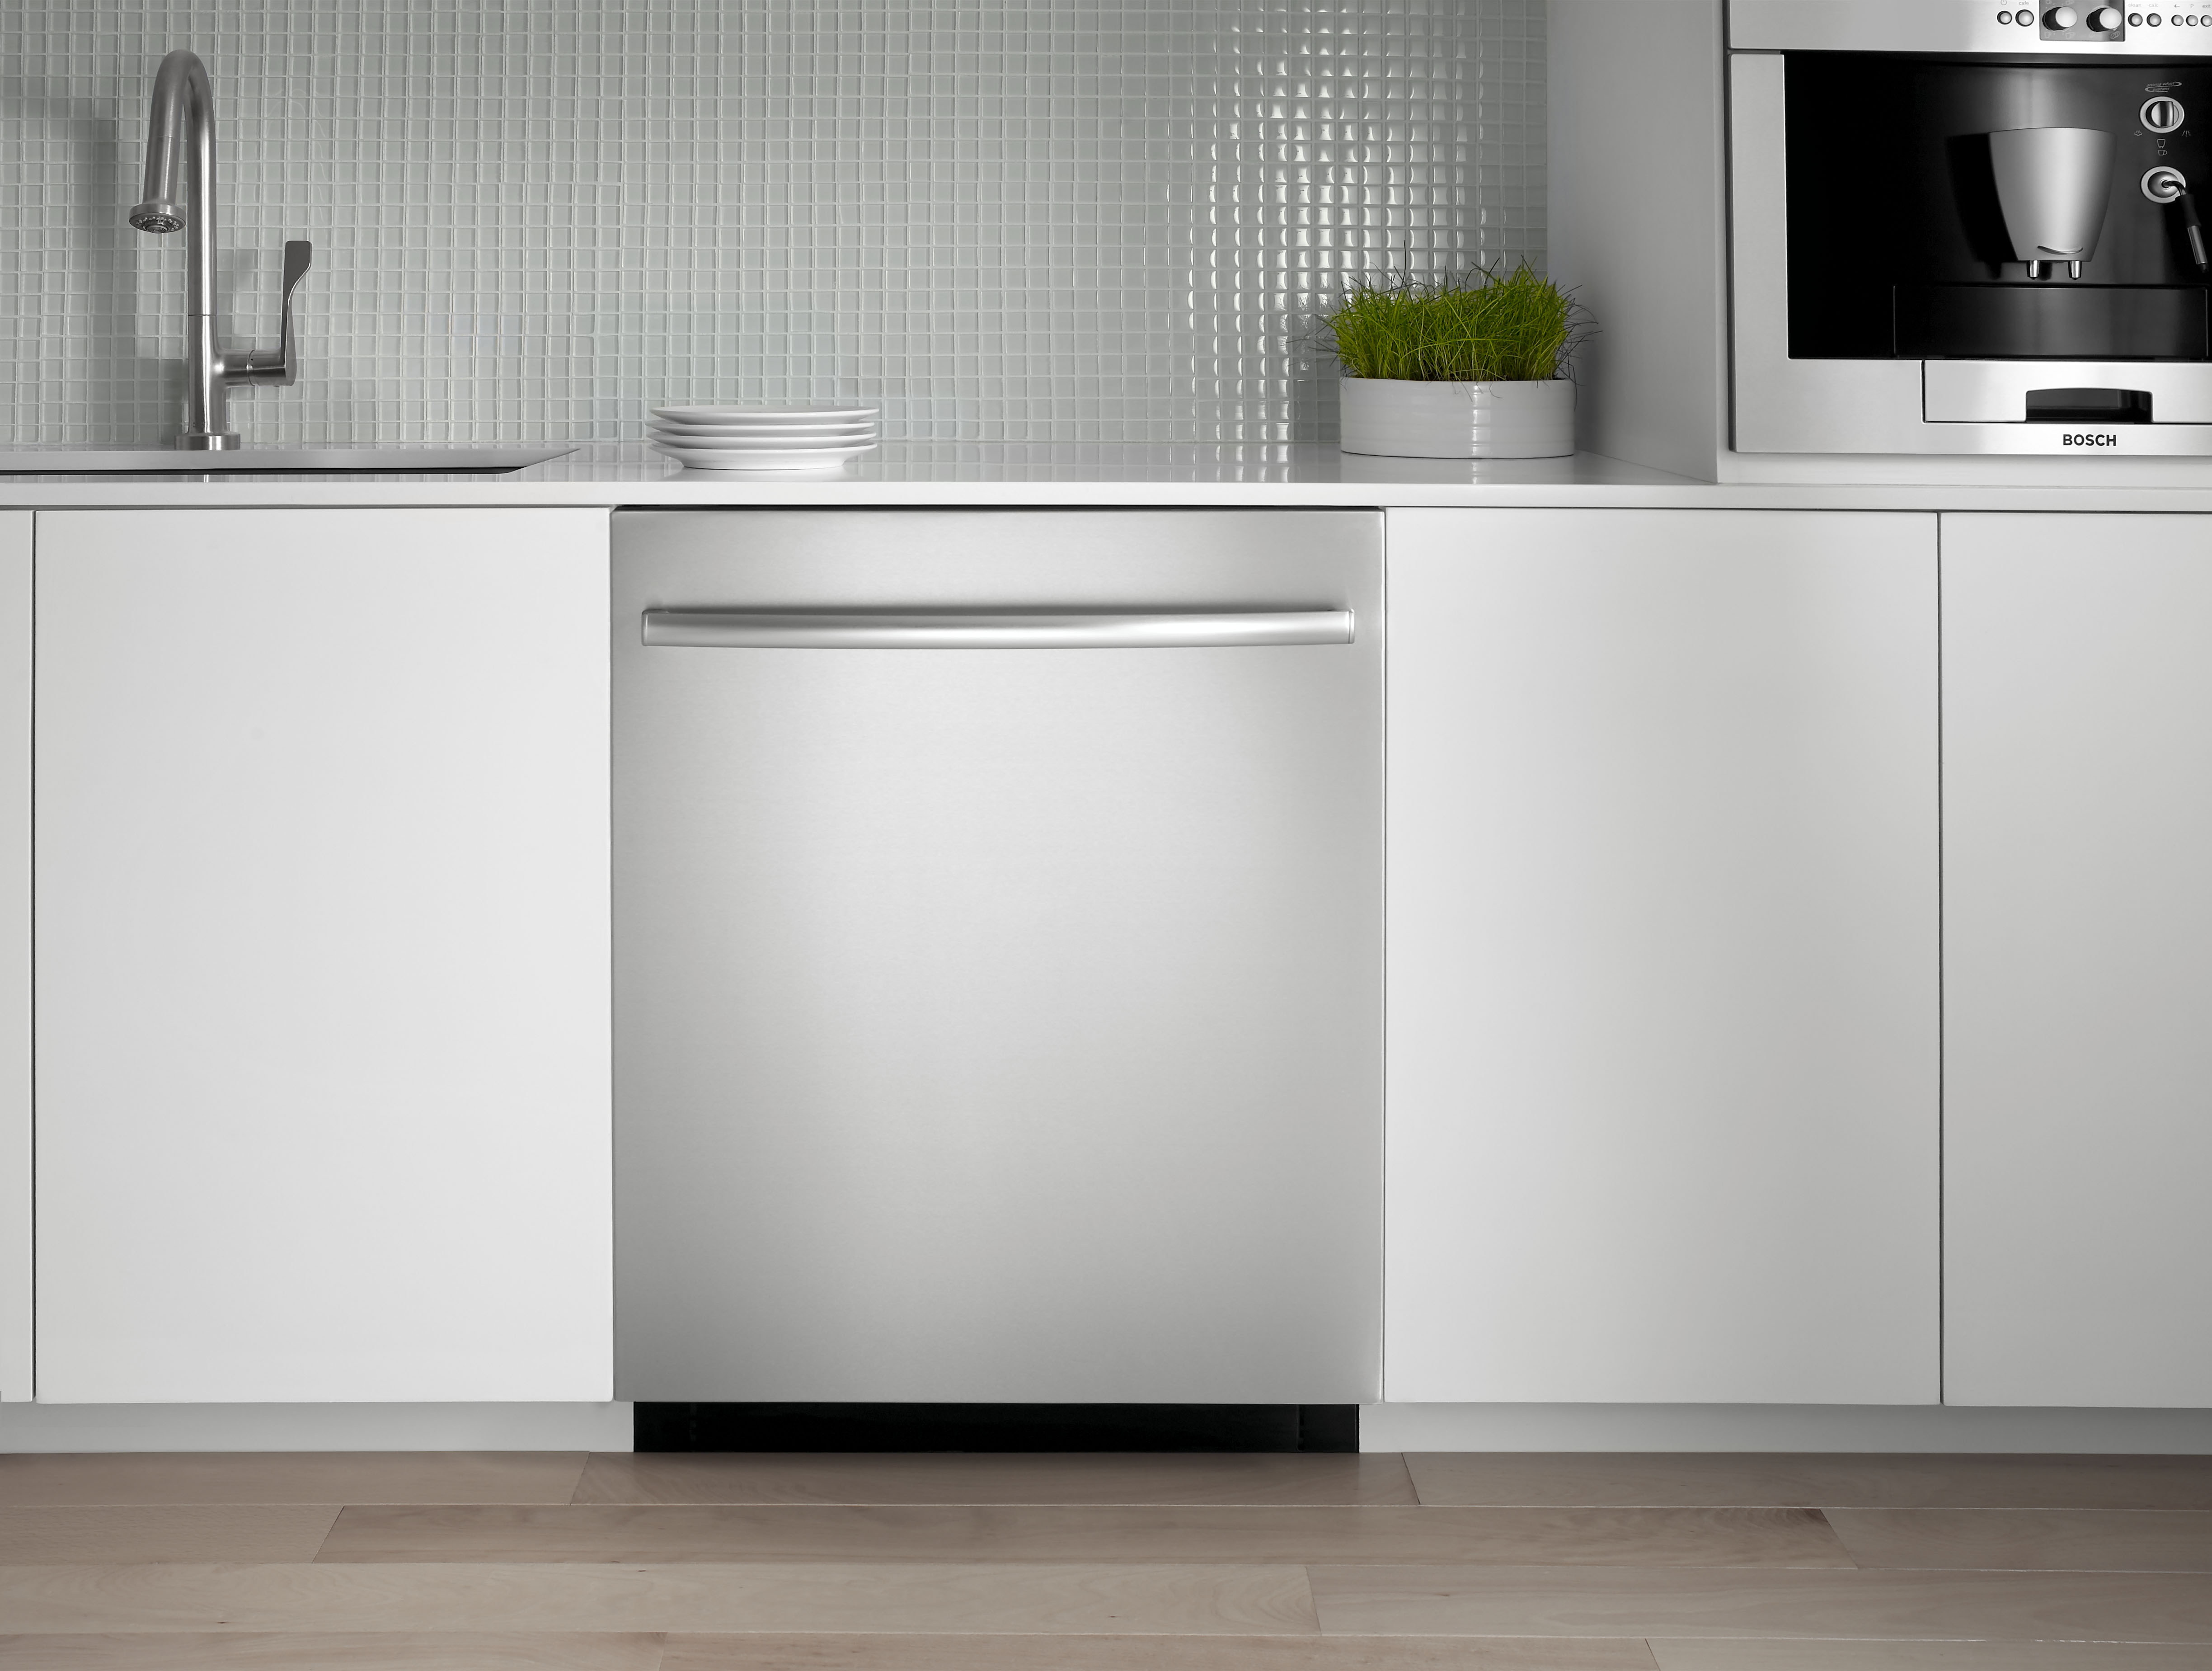 most efficient dishwasher 2016